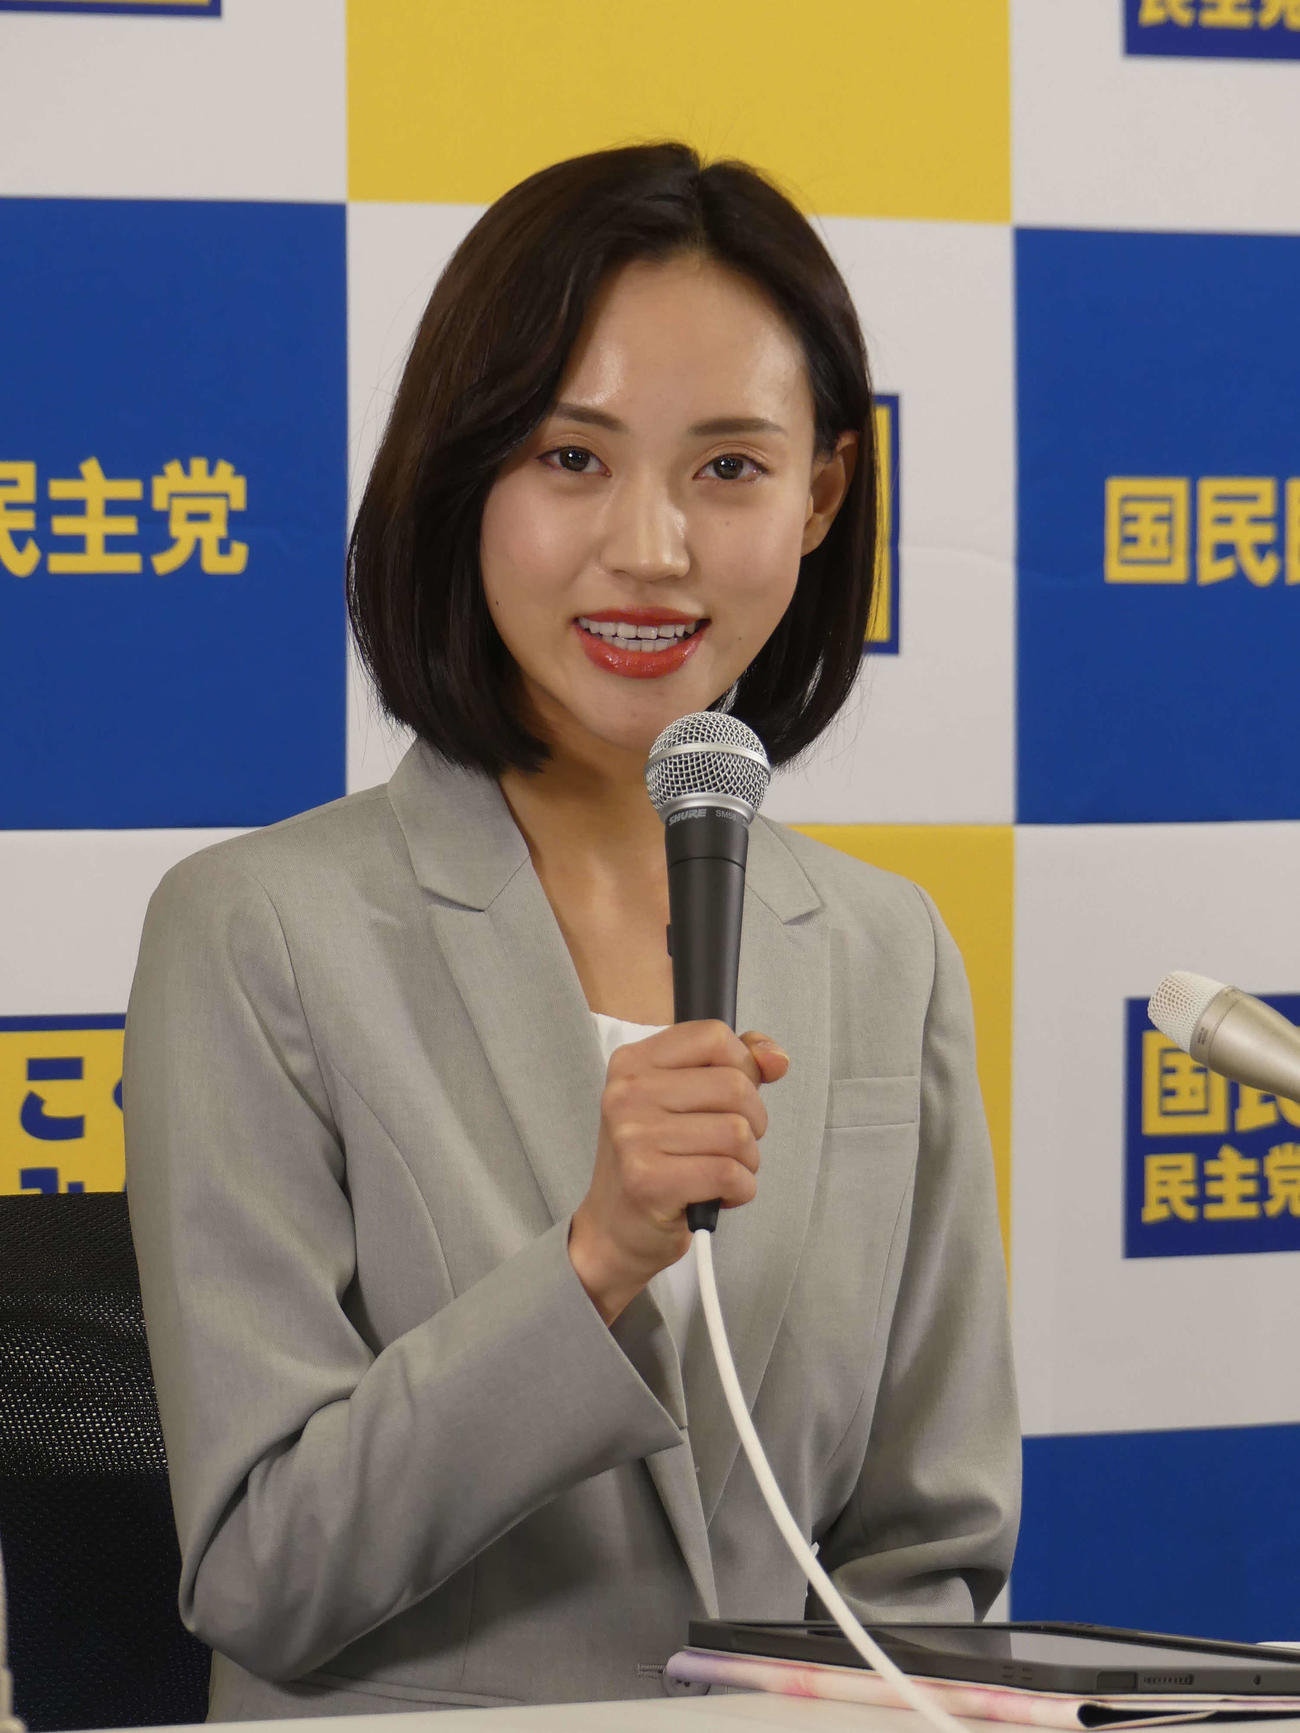 La ex locutora Mari Takahashi declara “retirarse de la política”, afirma que el Partido Doméstico Demócrata la obligó a renunciar a su candidatura y niega ocurrir recibido beneficios sociales ilegales – Nikkan Sports CINEINFO12